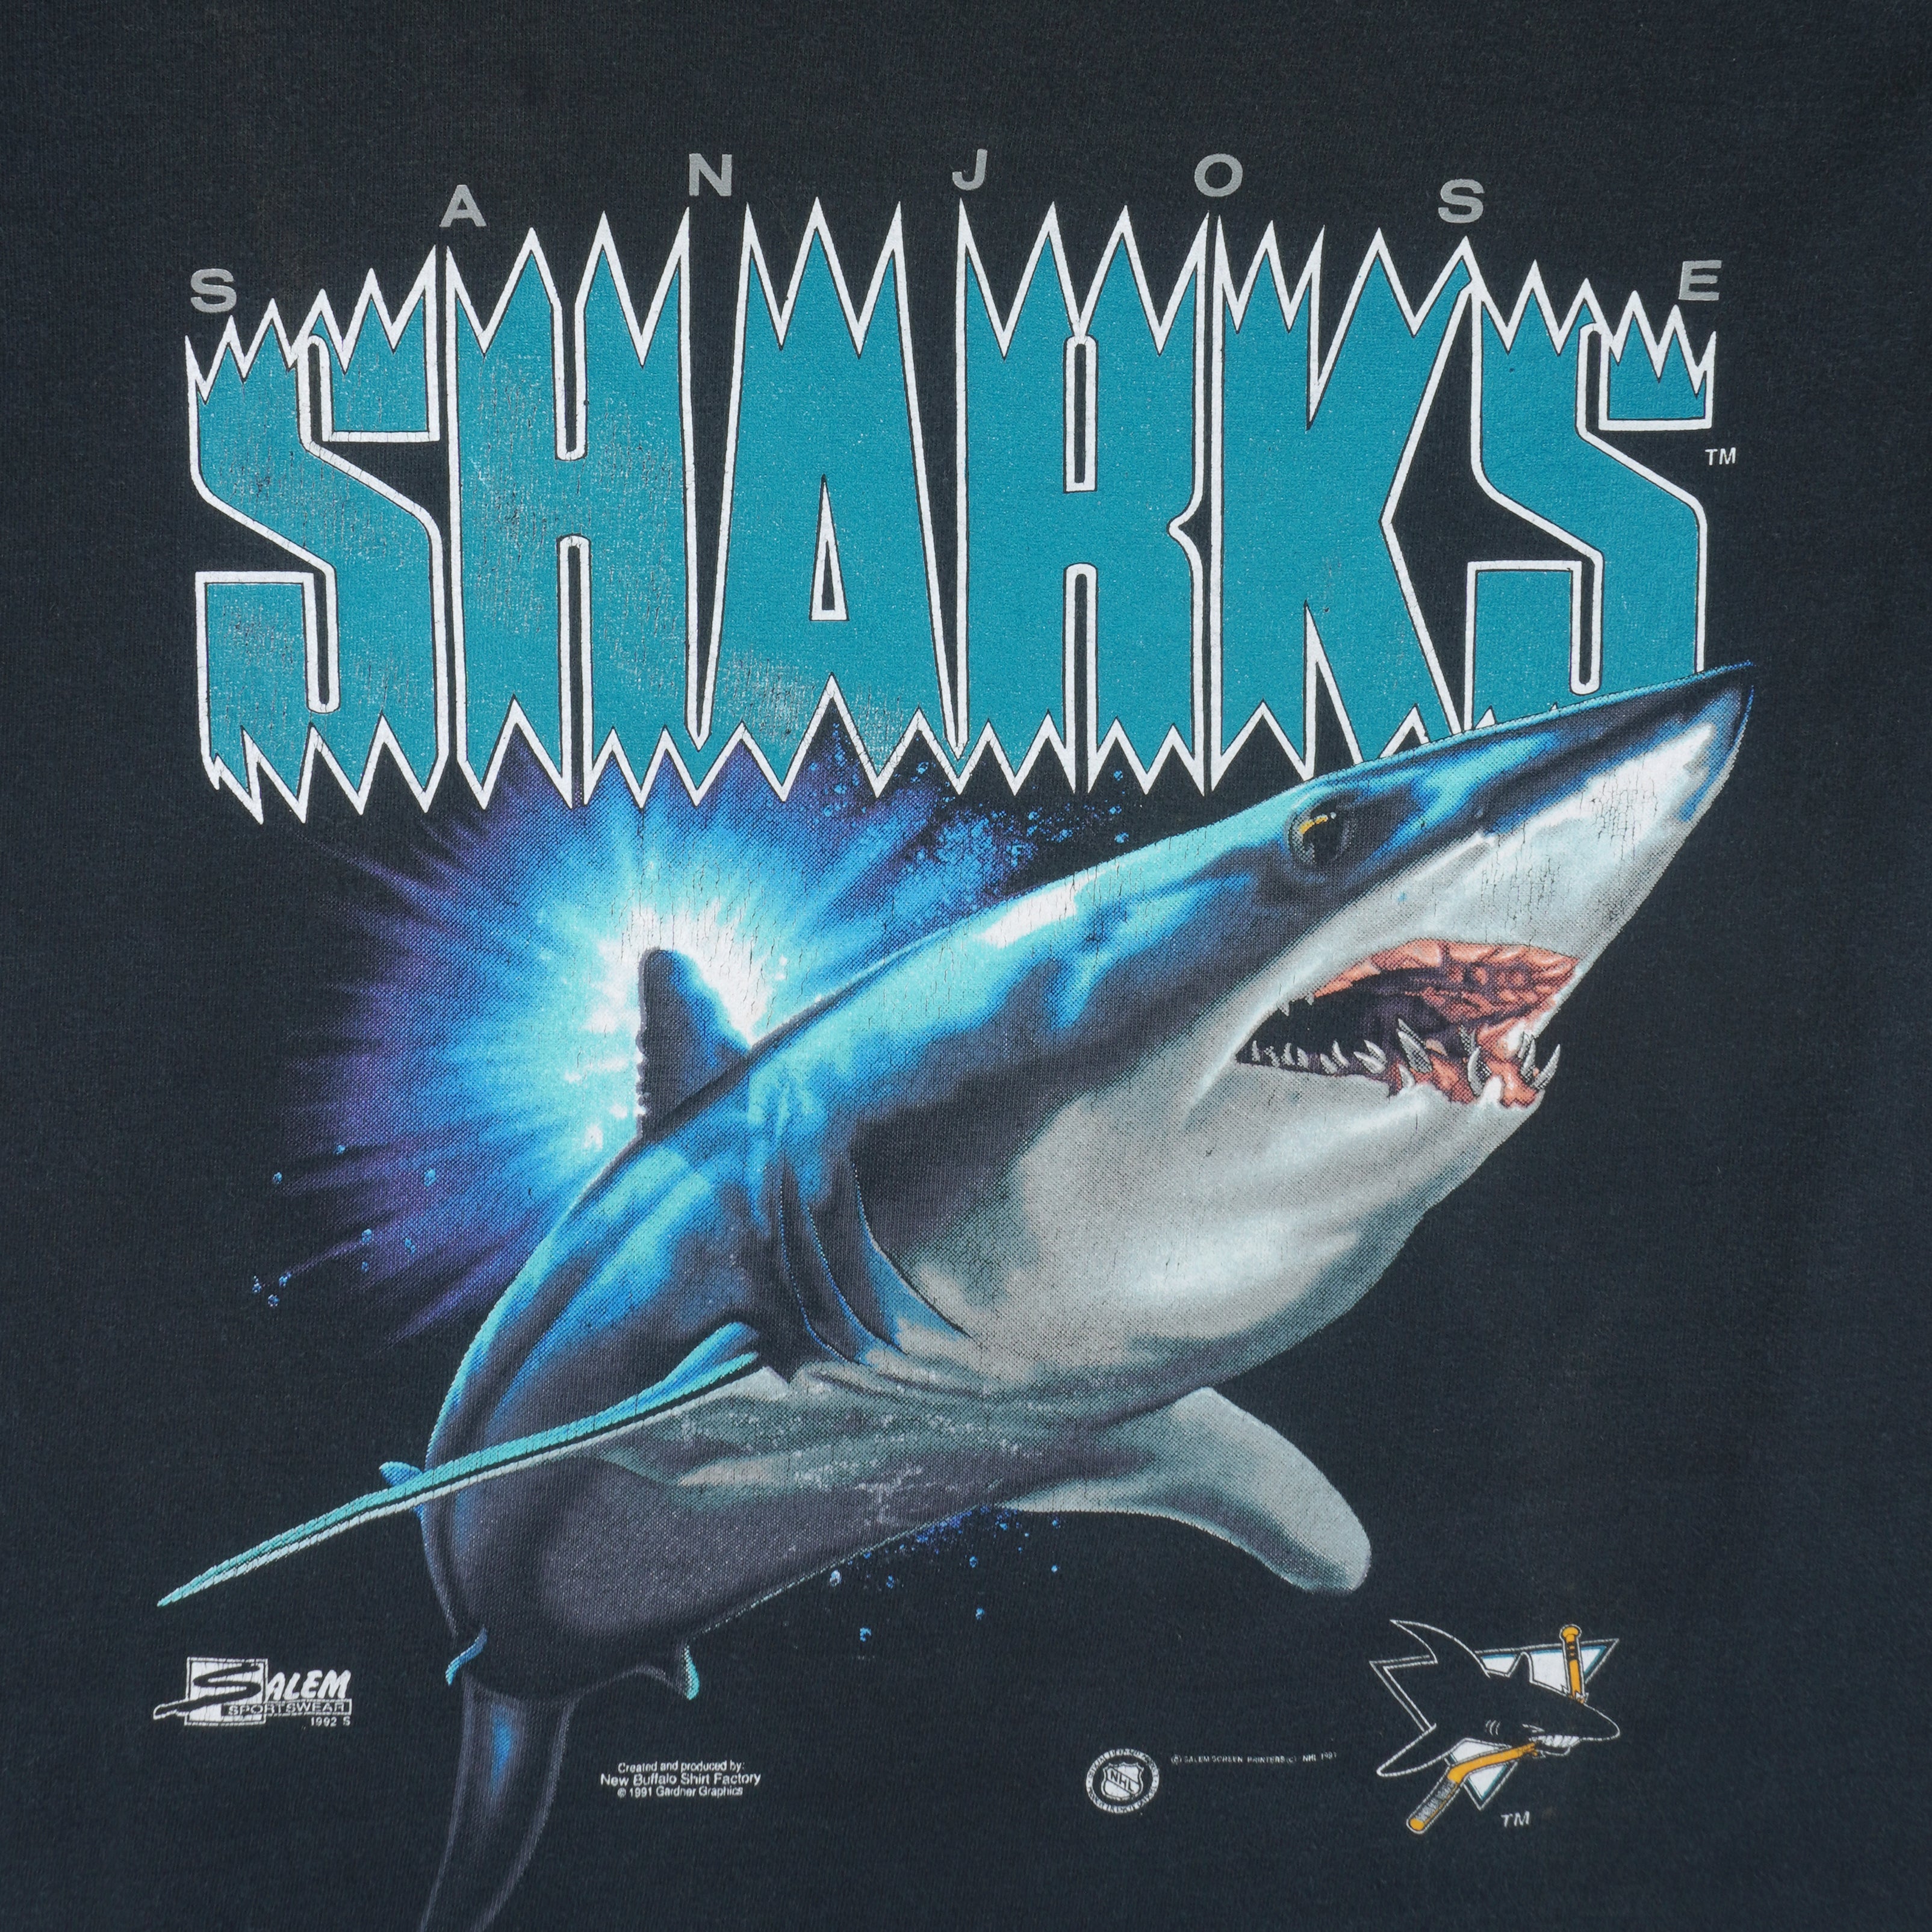 Mostly Sharks jerseys For Sale : r/SanJoseSharks